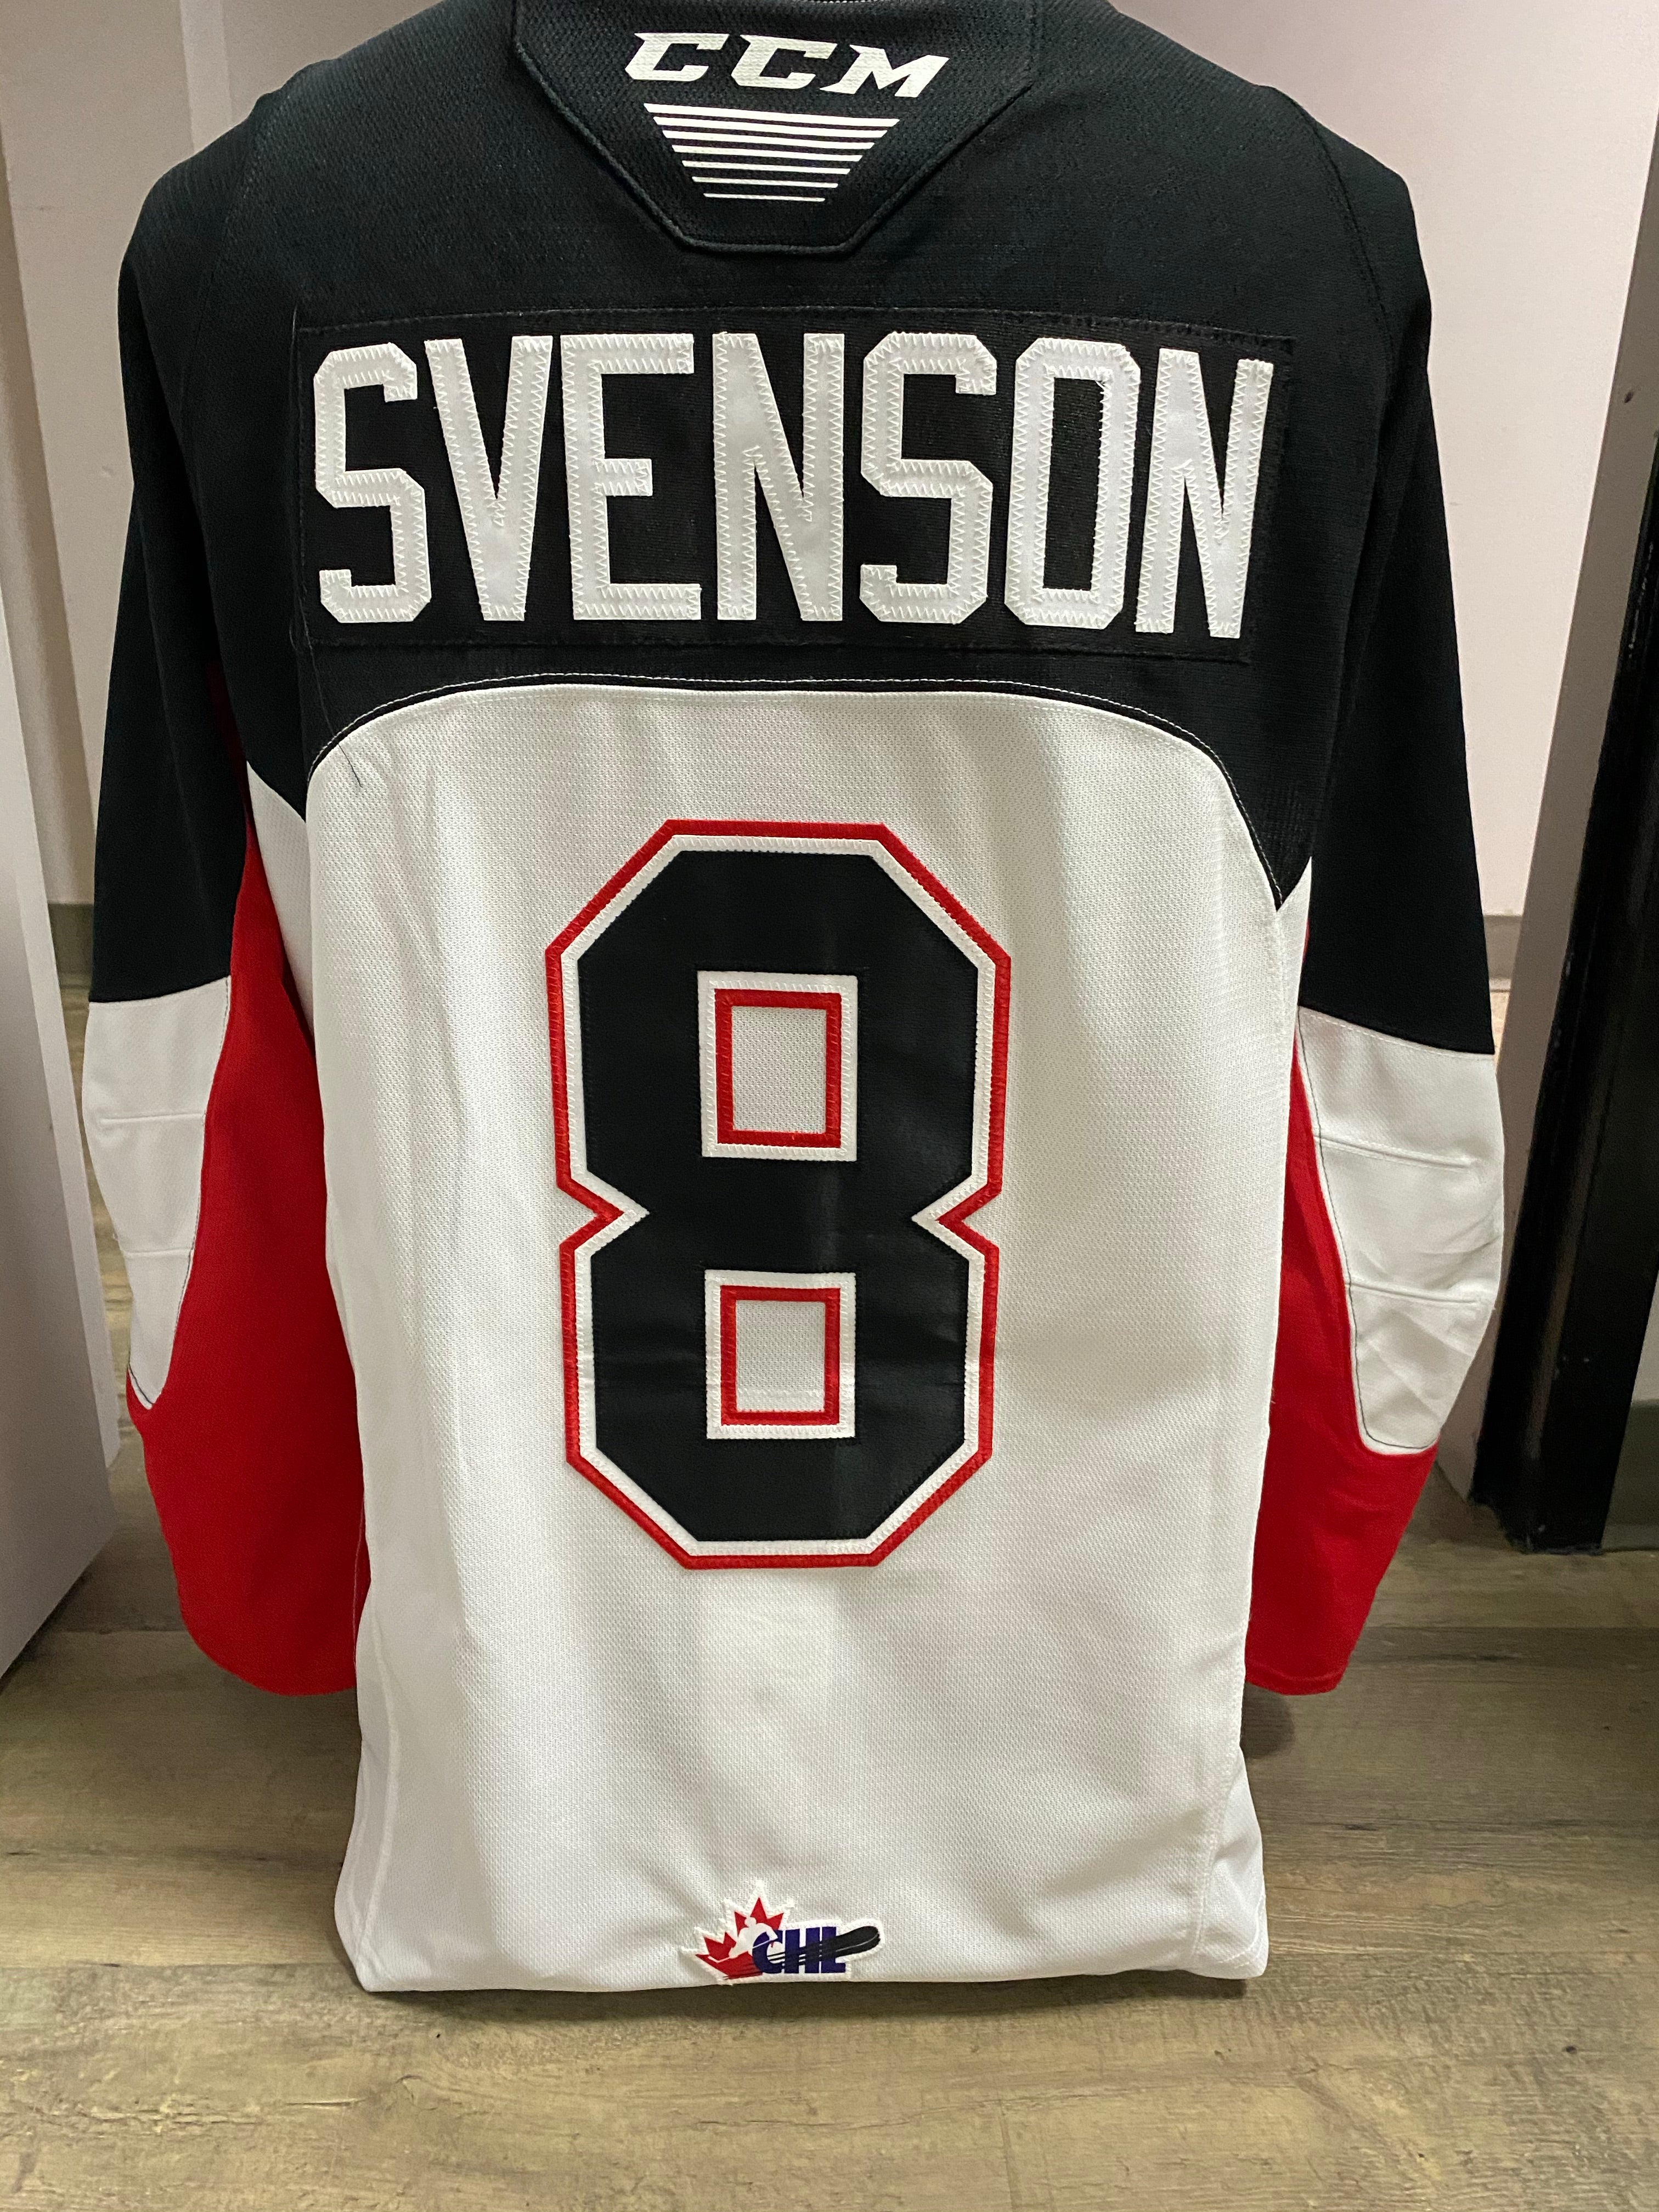 2020/21 SEASON Svenson